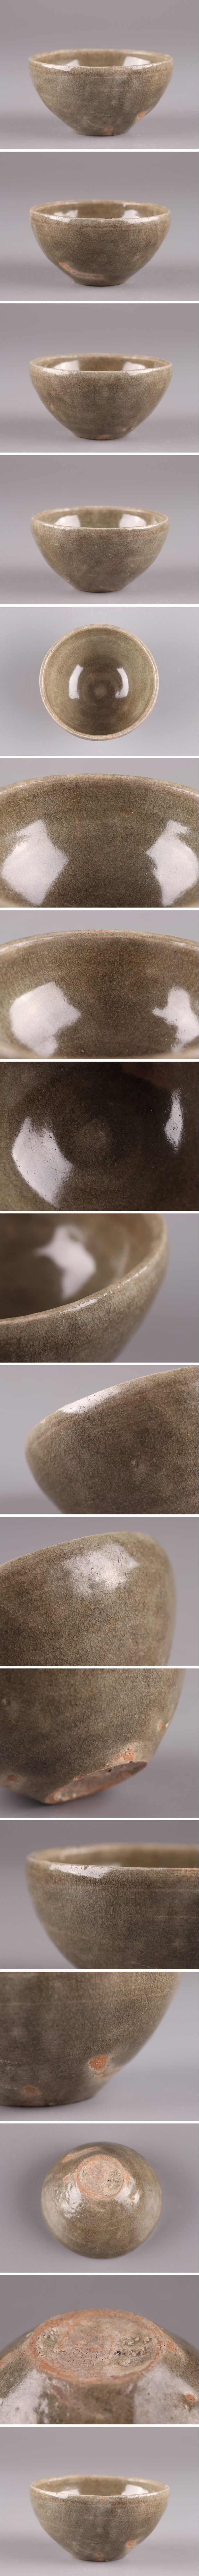 激安限定古美術 朝鮮古陶磁器 高麗青磁 盃 古作 時代物 初だし品 3795 高麗